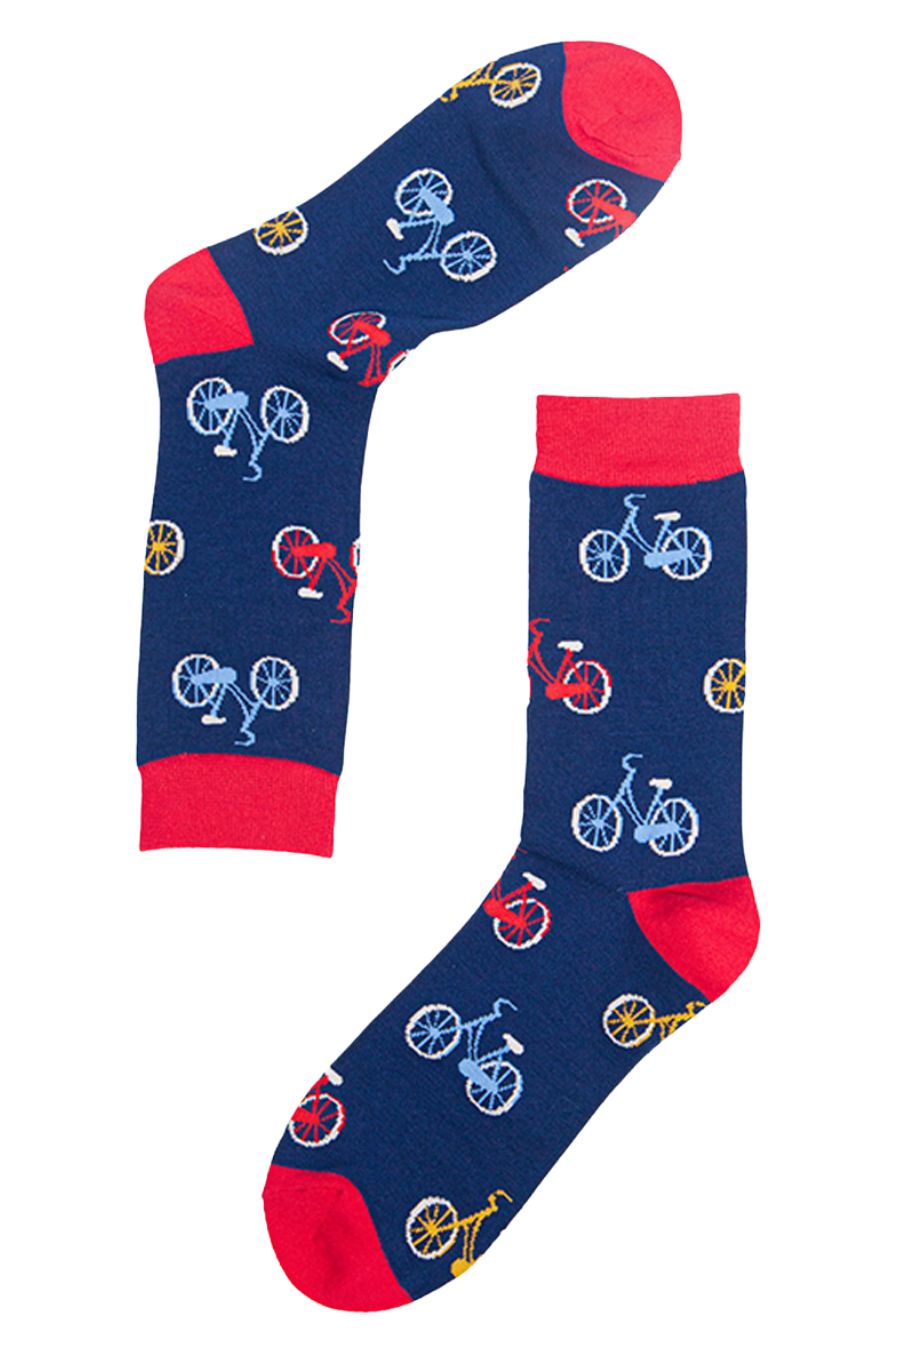 Mens Bamboo Cycling Socks Bicycle Print Novelty Socks Navy Blue